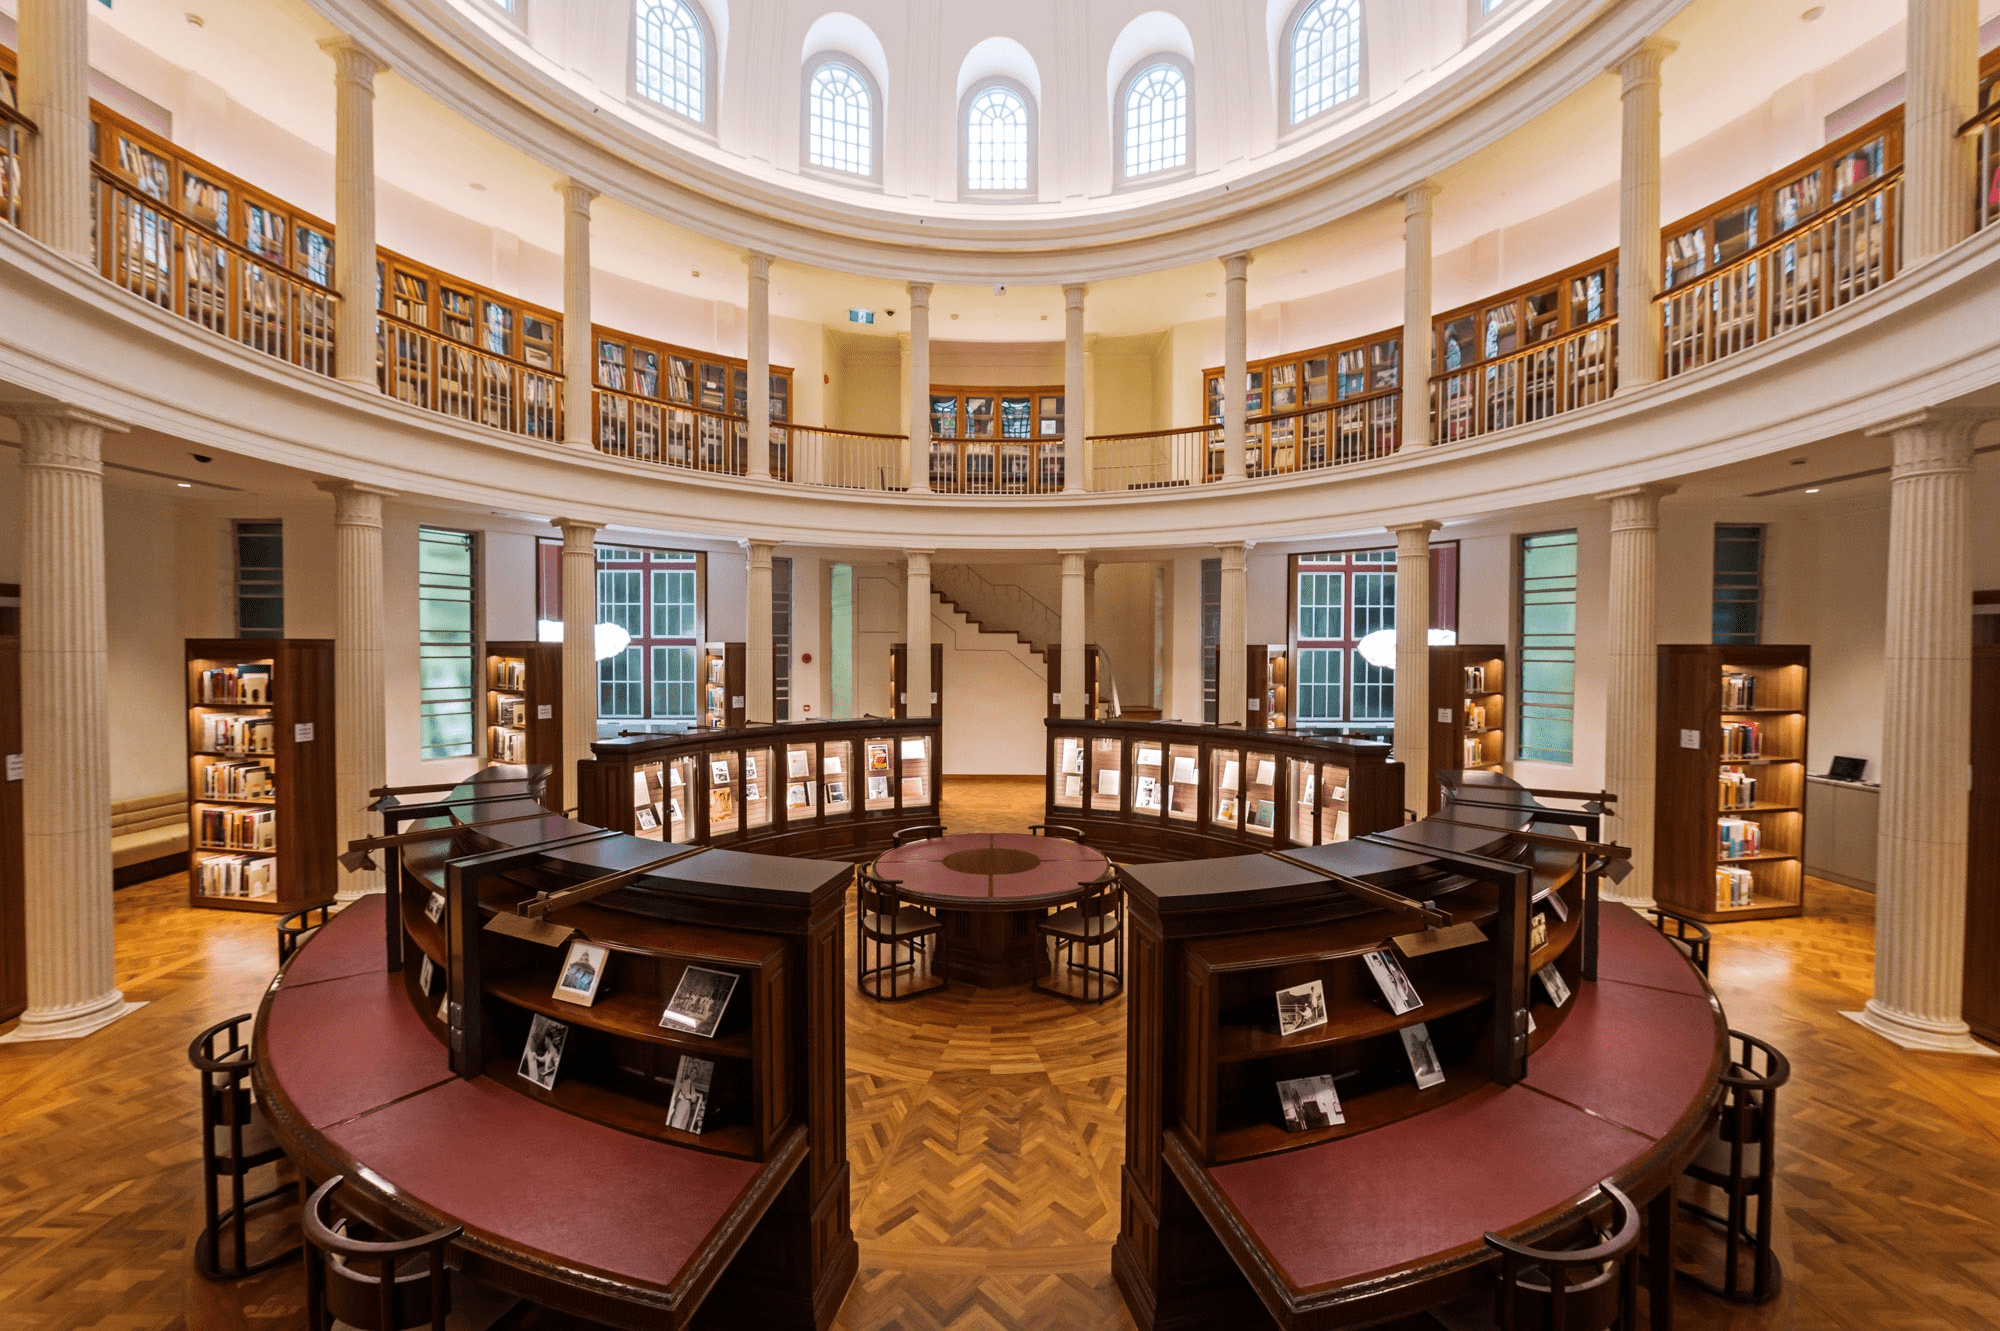 Rotunda Library at national gallery